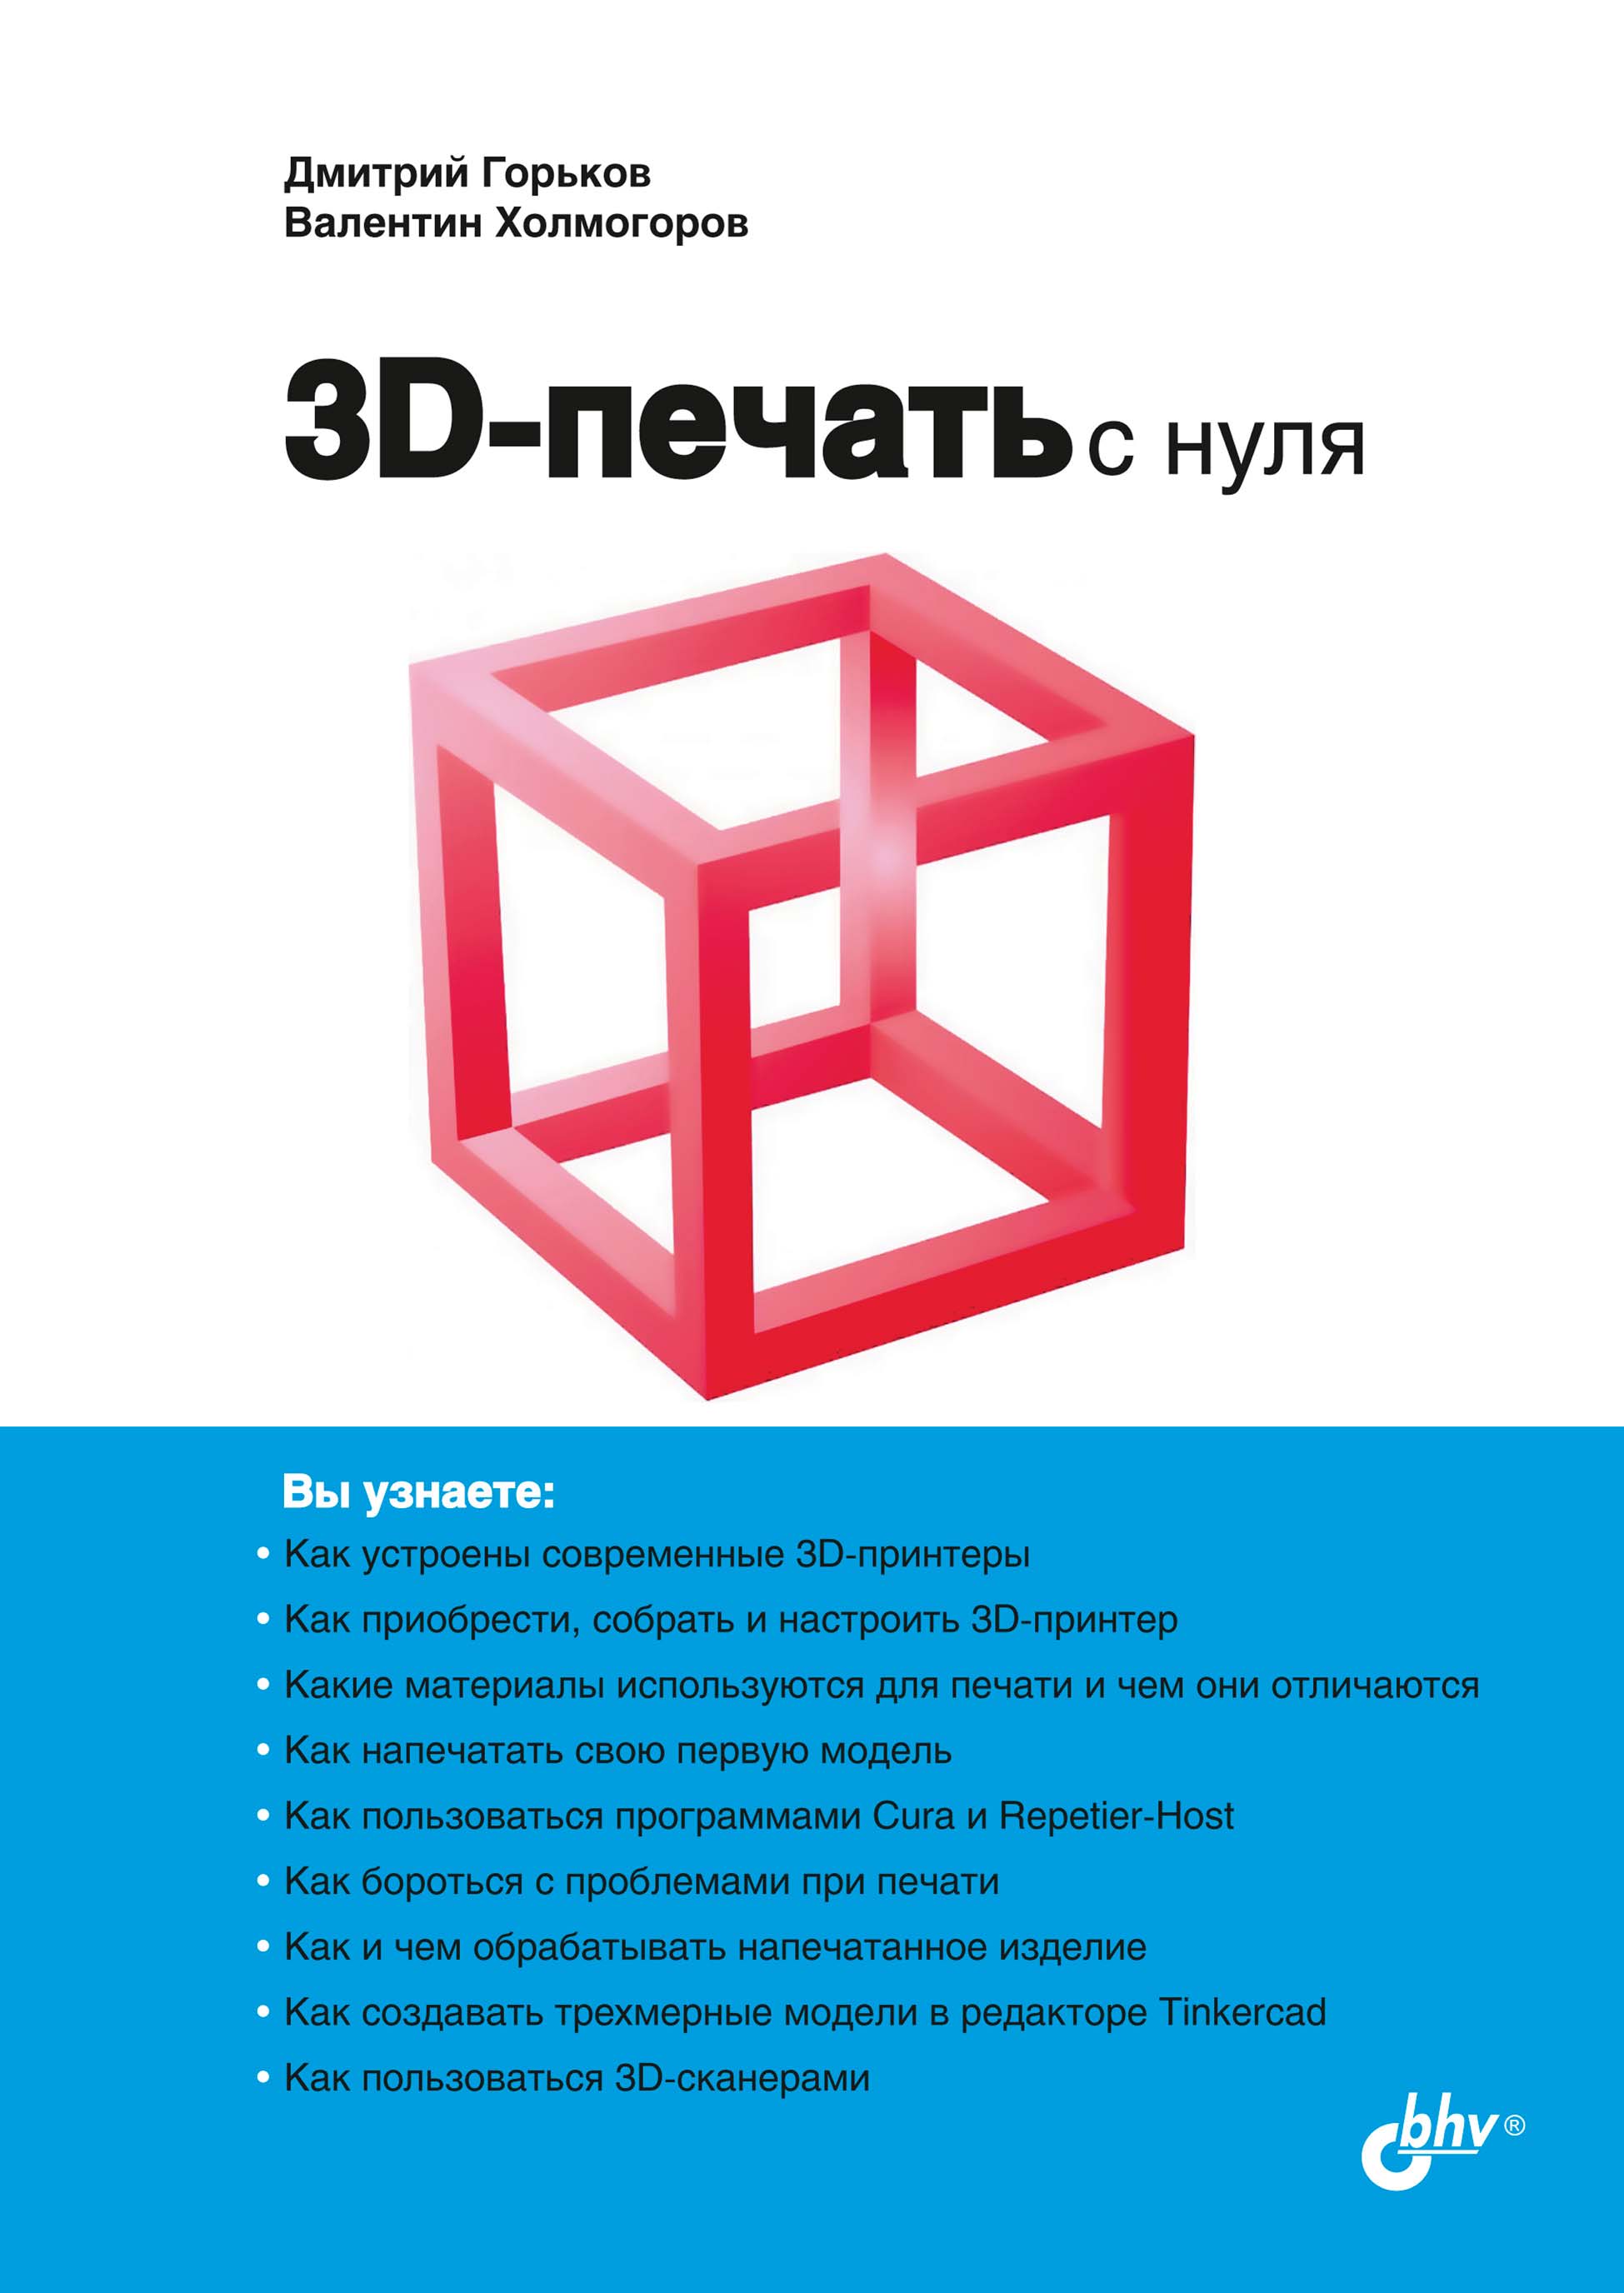 Книга С нуля 3D-печать с нуля созданная Валентин Холмогоров, Дмитрий Горьков может относится к жанру программы, руководства. Стоимость электронной книги 3D-печать с нуля с идентификатором 66338162 составляет 360.00 руб.